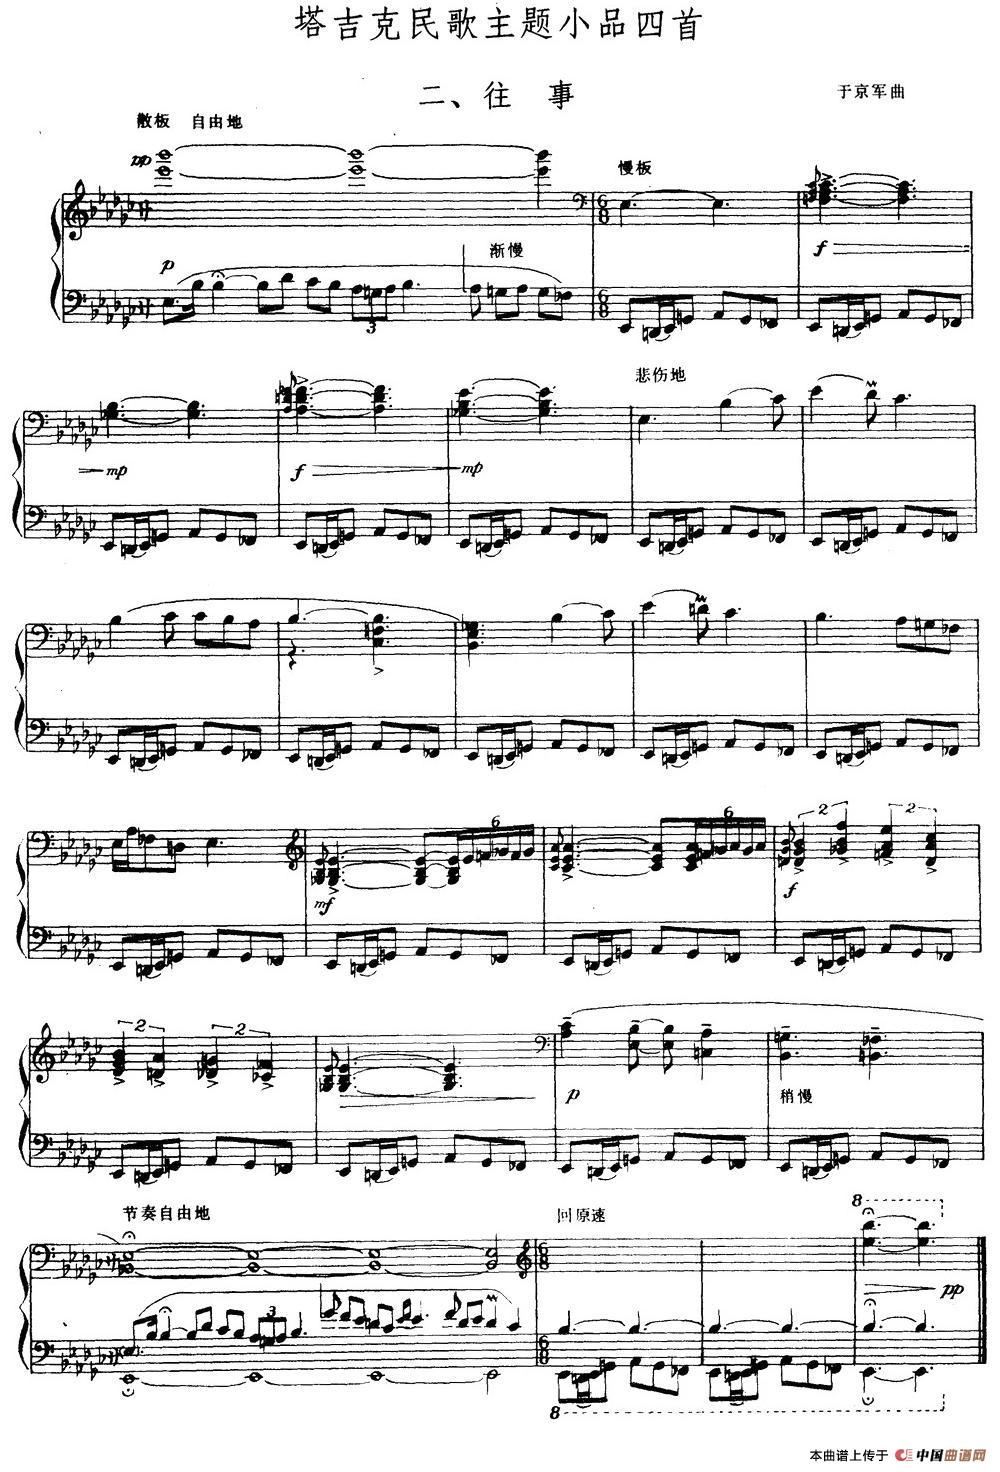 《塔吉克民歌主题小品四首 二、往事》钢琴曲谱图分享